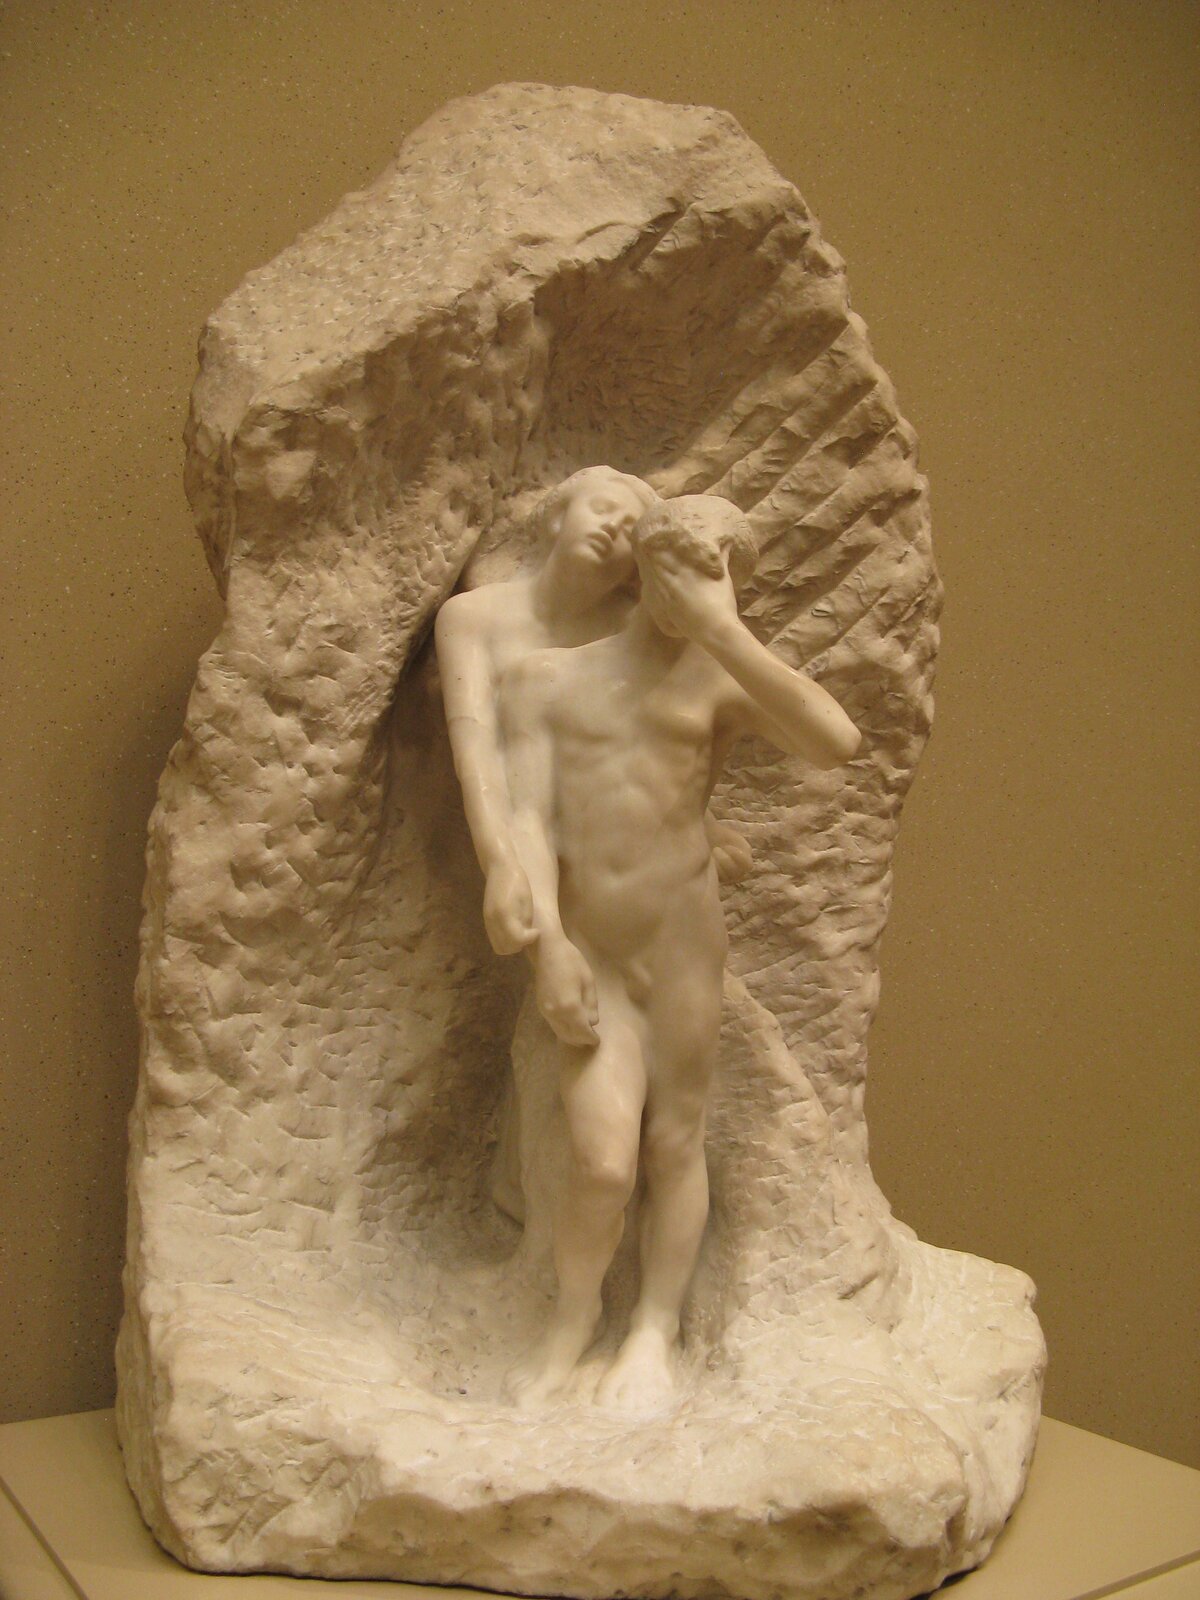 Na ilustracji jest przestawiona marmurowa rzeźba Auguste Rodin’a pt. „Orfeusz i Eurydyka”. Ukazuje ona postać nagiego mężczyzny, który lewą ręką zasłania sobie oczy. Za nim, przytulona do jego pleców, stoi kobieta. Ma odchyloną do tyłu głowę, przymknięte powieki. Postaci ustawione są na skale, która stanowi tło rzeźby.